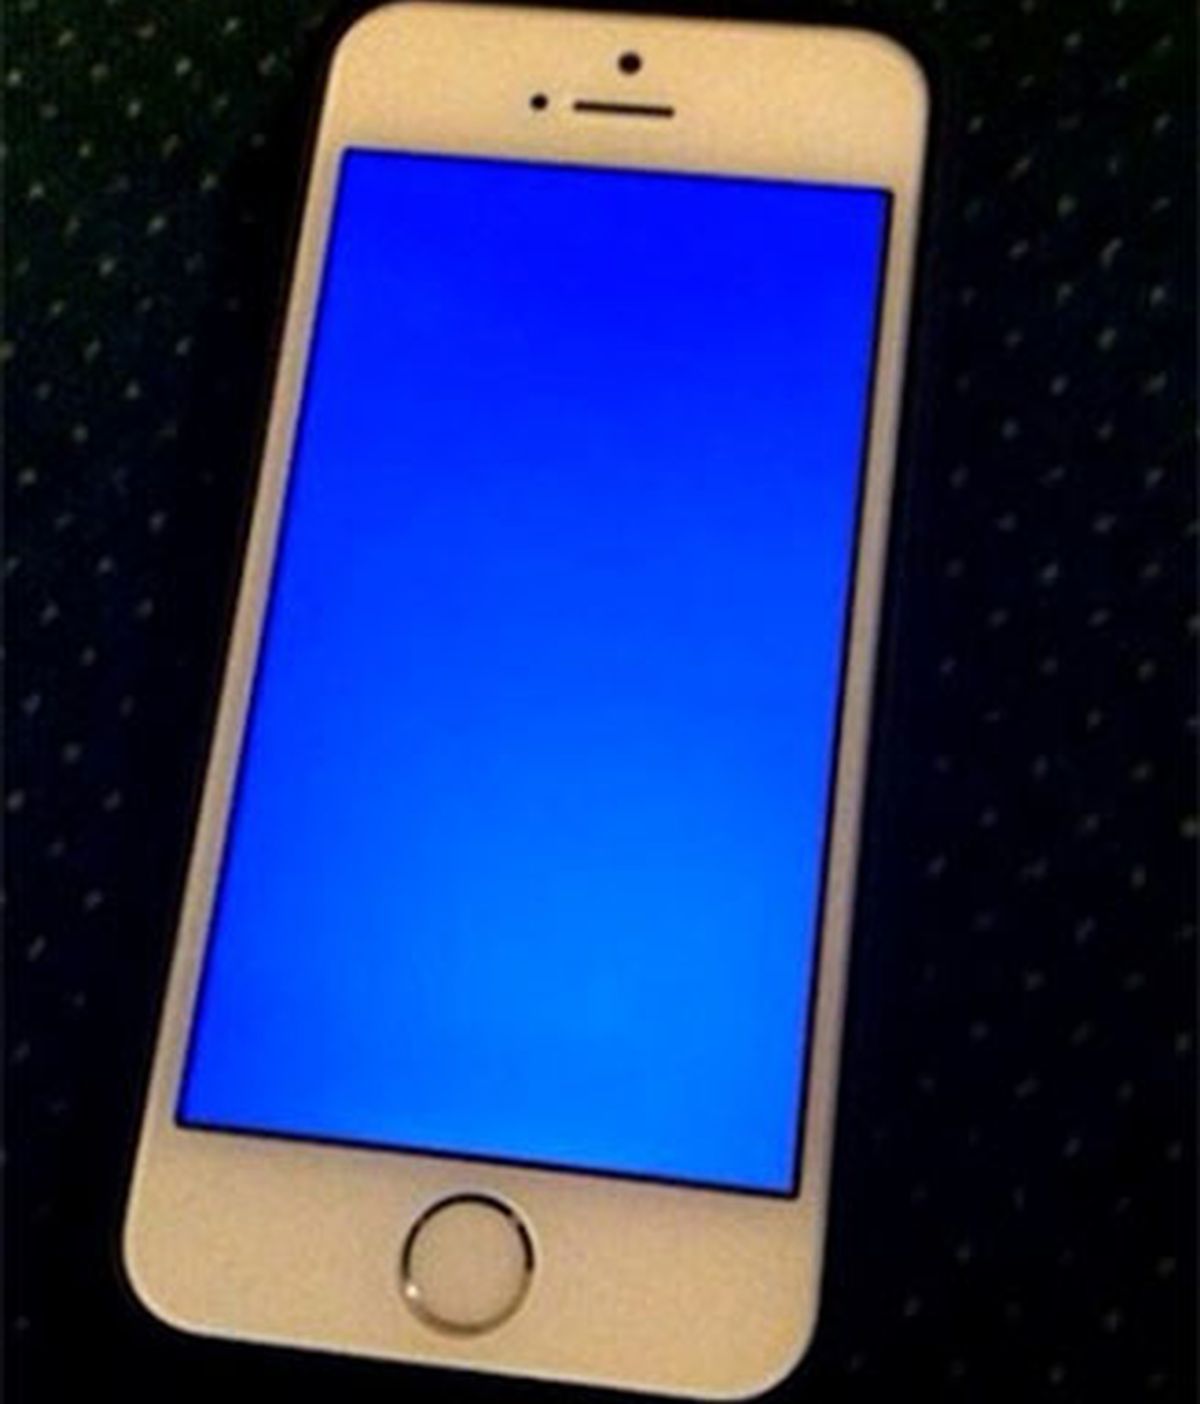 Los usuarios de iPhone 5S no lo ven nada claro ante el 'pantallazo azul de la muerte'